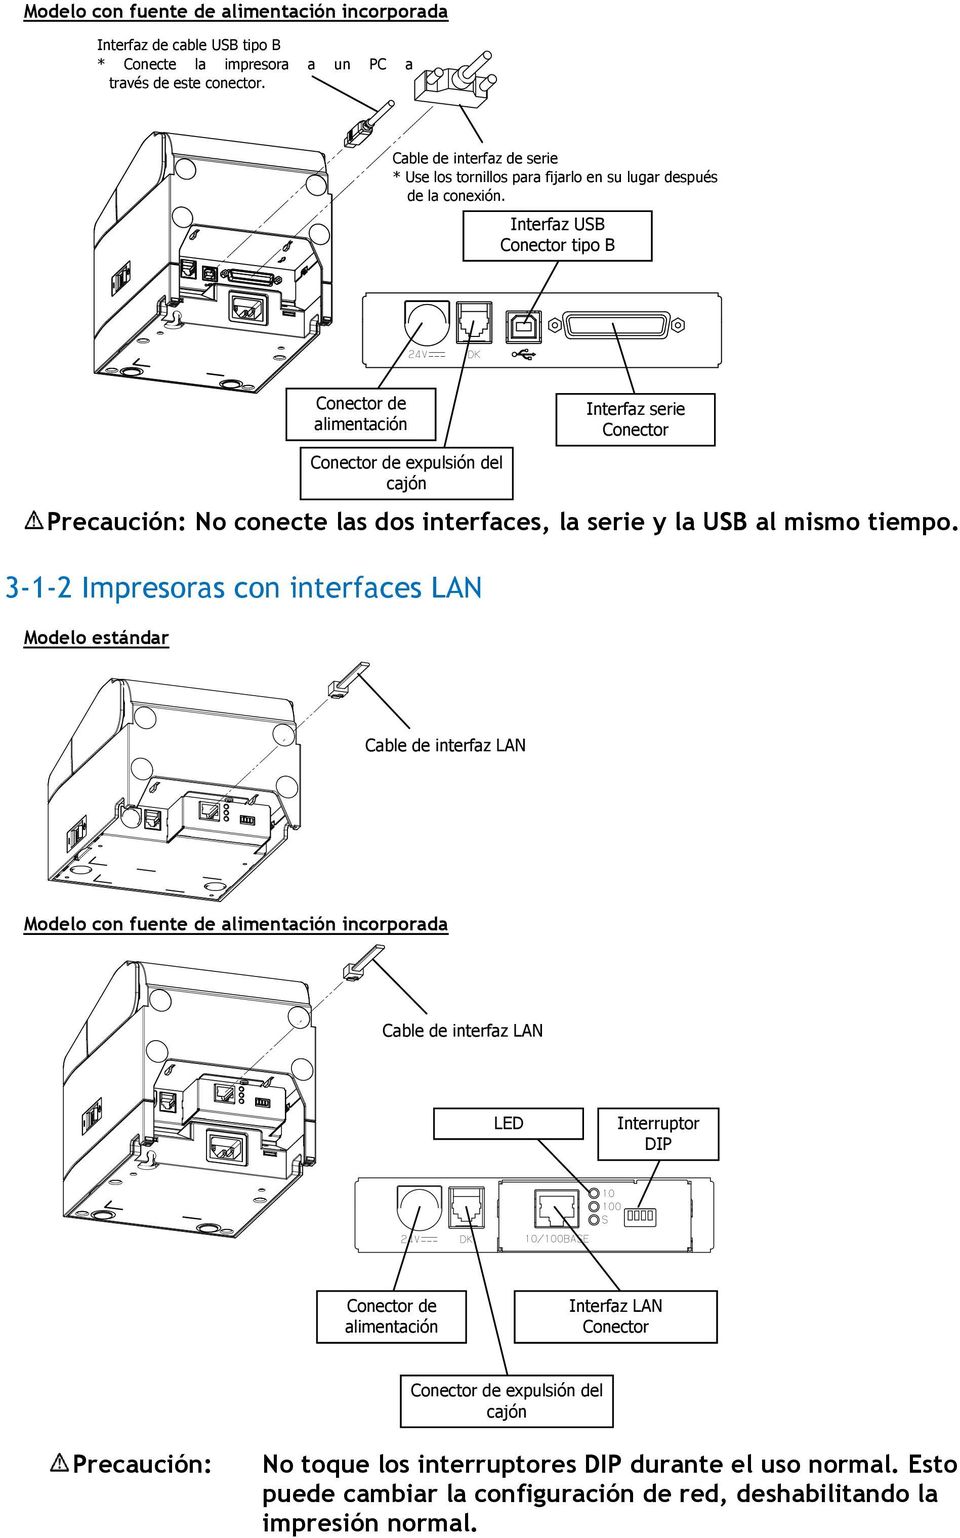 Interfaz USB Conector tipo B Precaución: No conecte las dos interfaces, la serie y la USB al mismo tiempo.